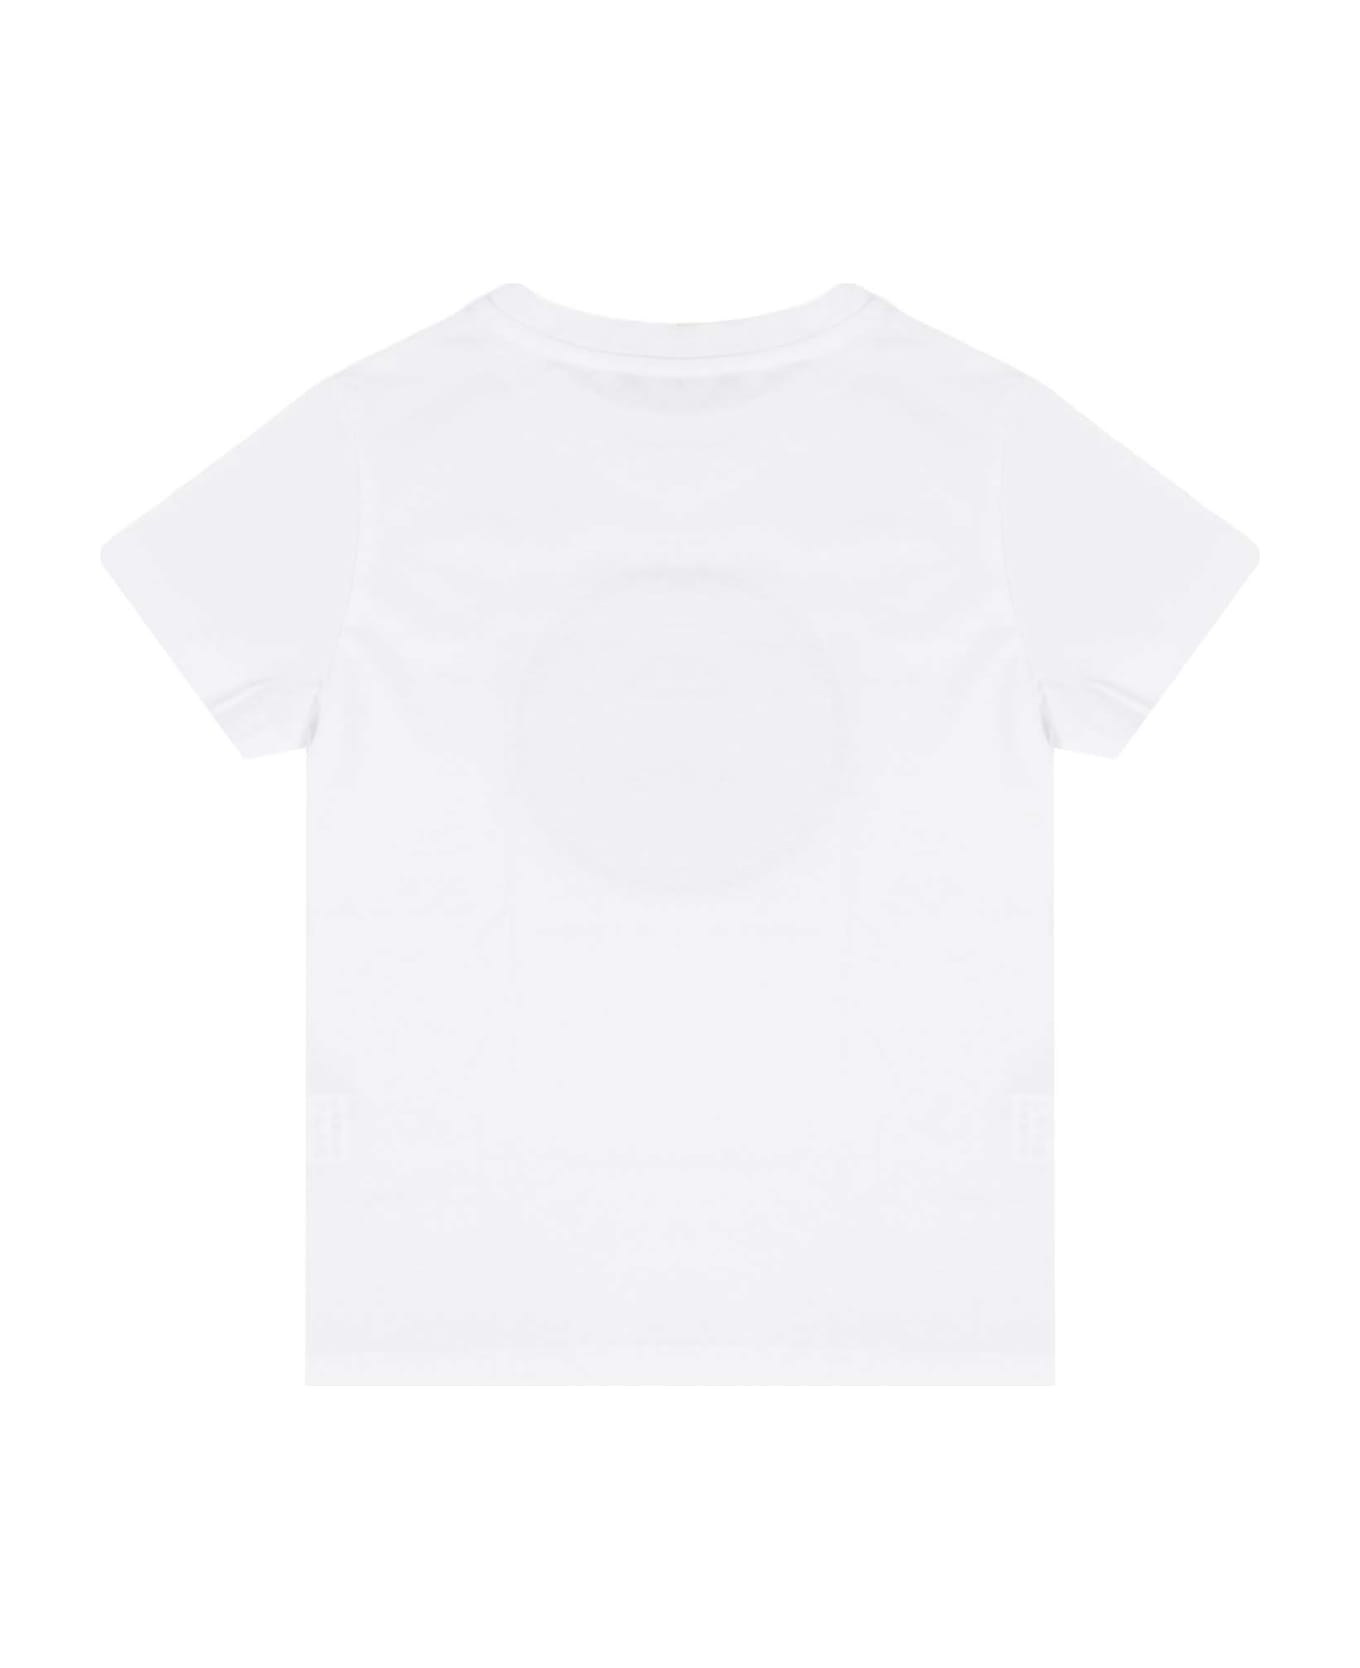 Balmain Cotton Jersey T-shirt - White